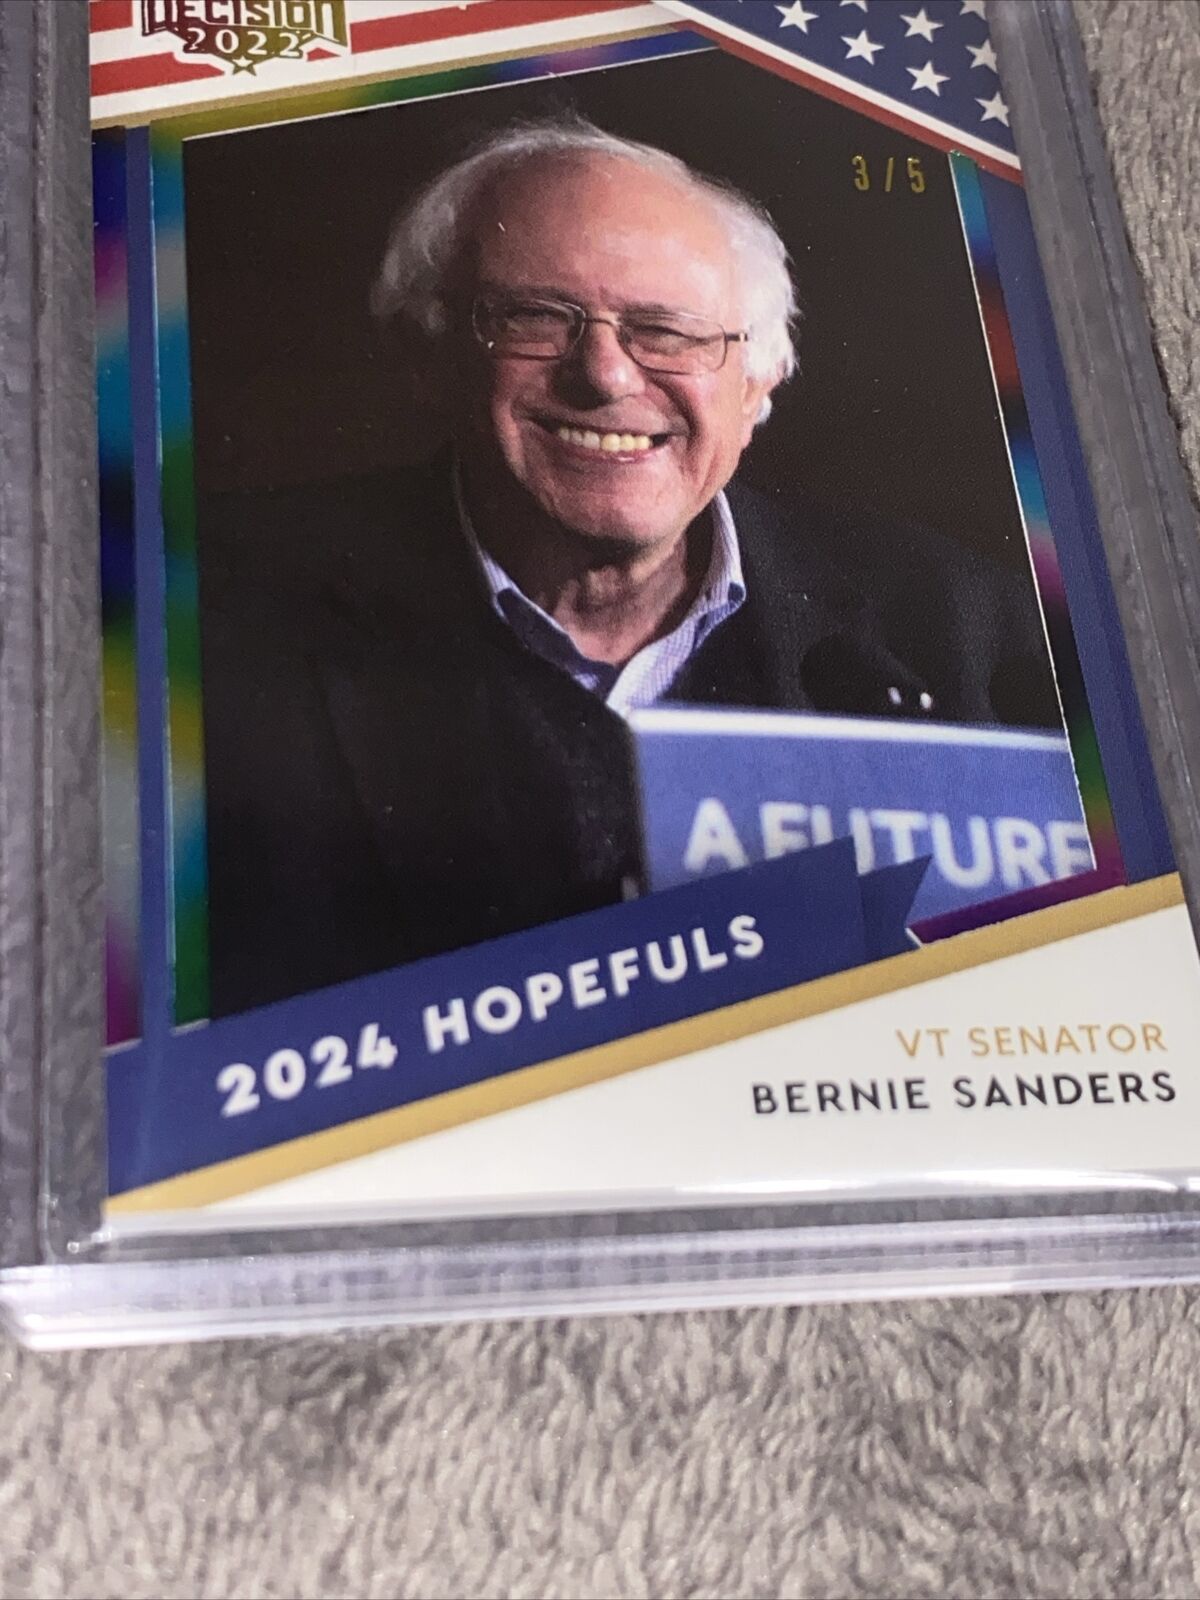 Bernie Sanders 16 2023 Decision / 2024 Hopefuls Rainbow 3/5 Senator VT